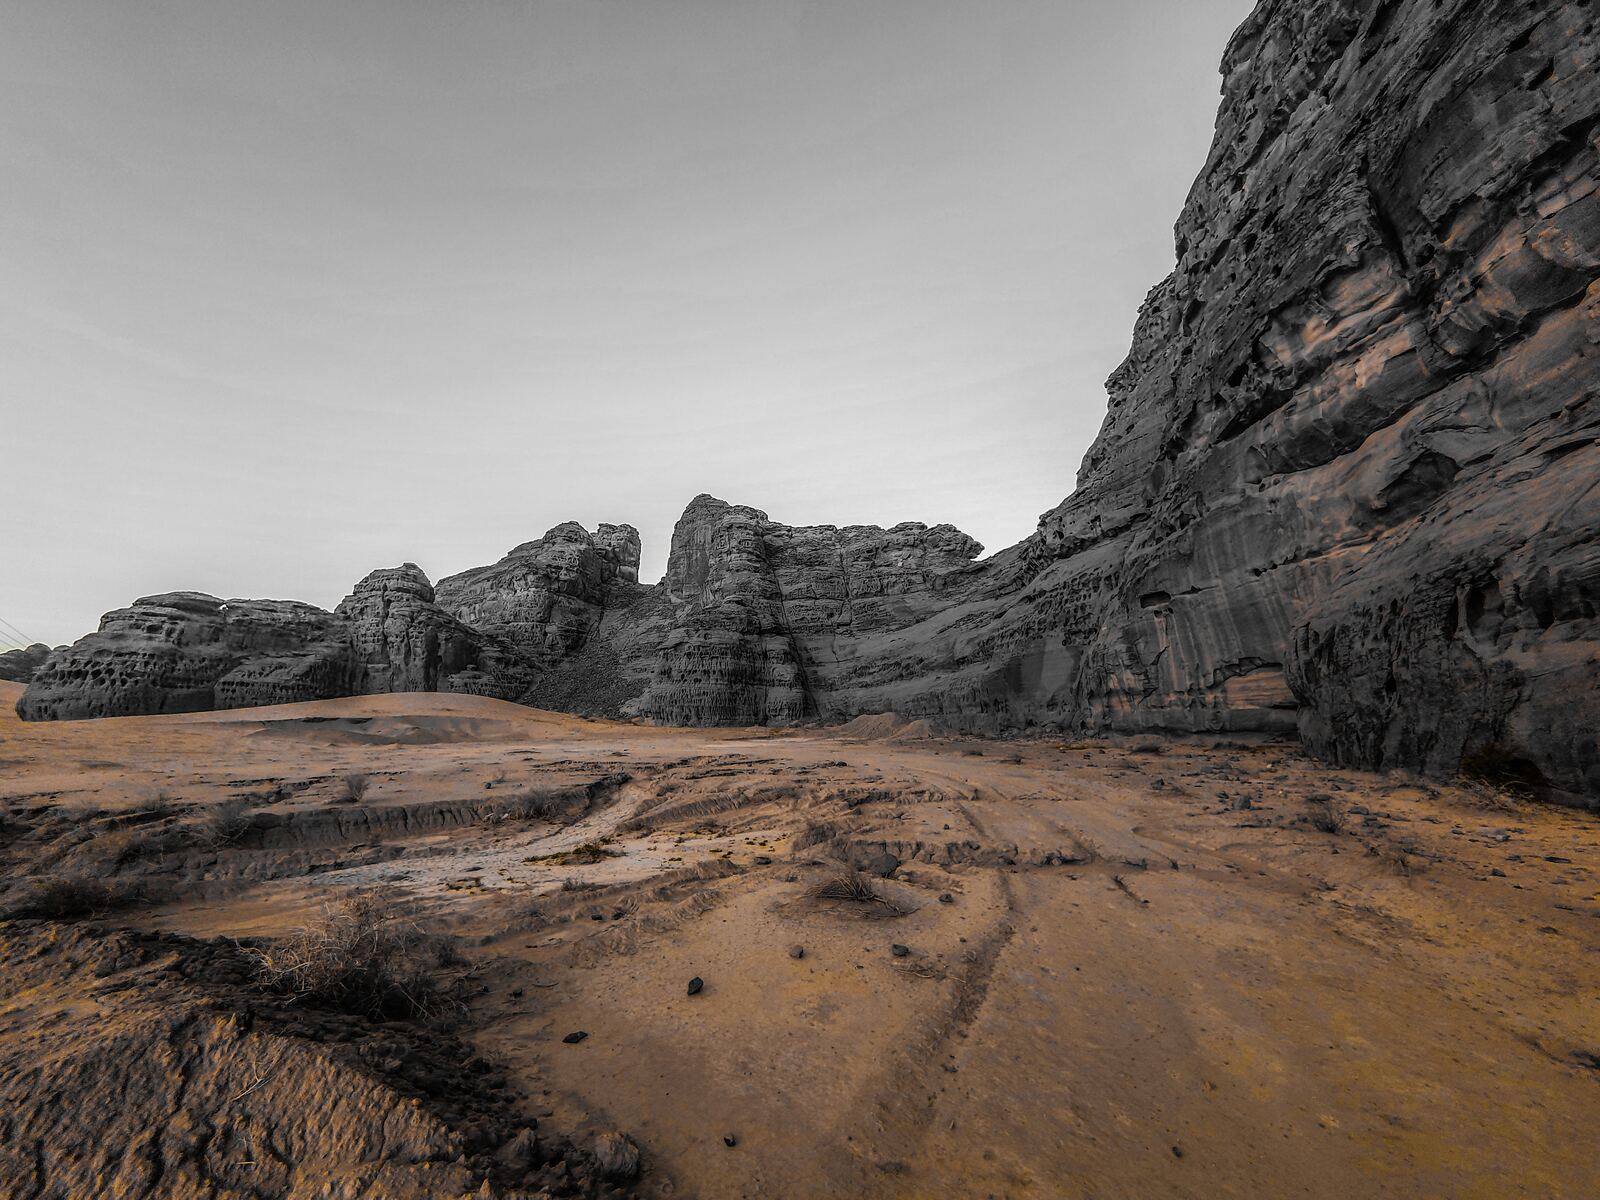 Image of AlUla Landscape by Team PhotoHound